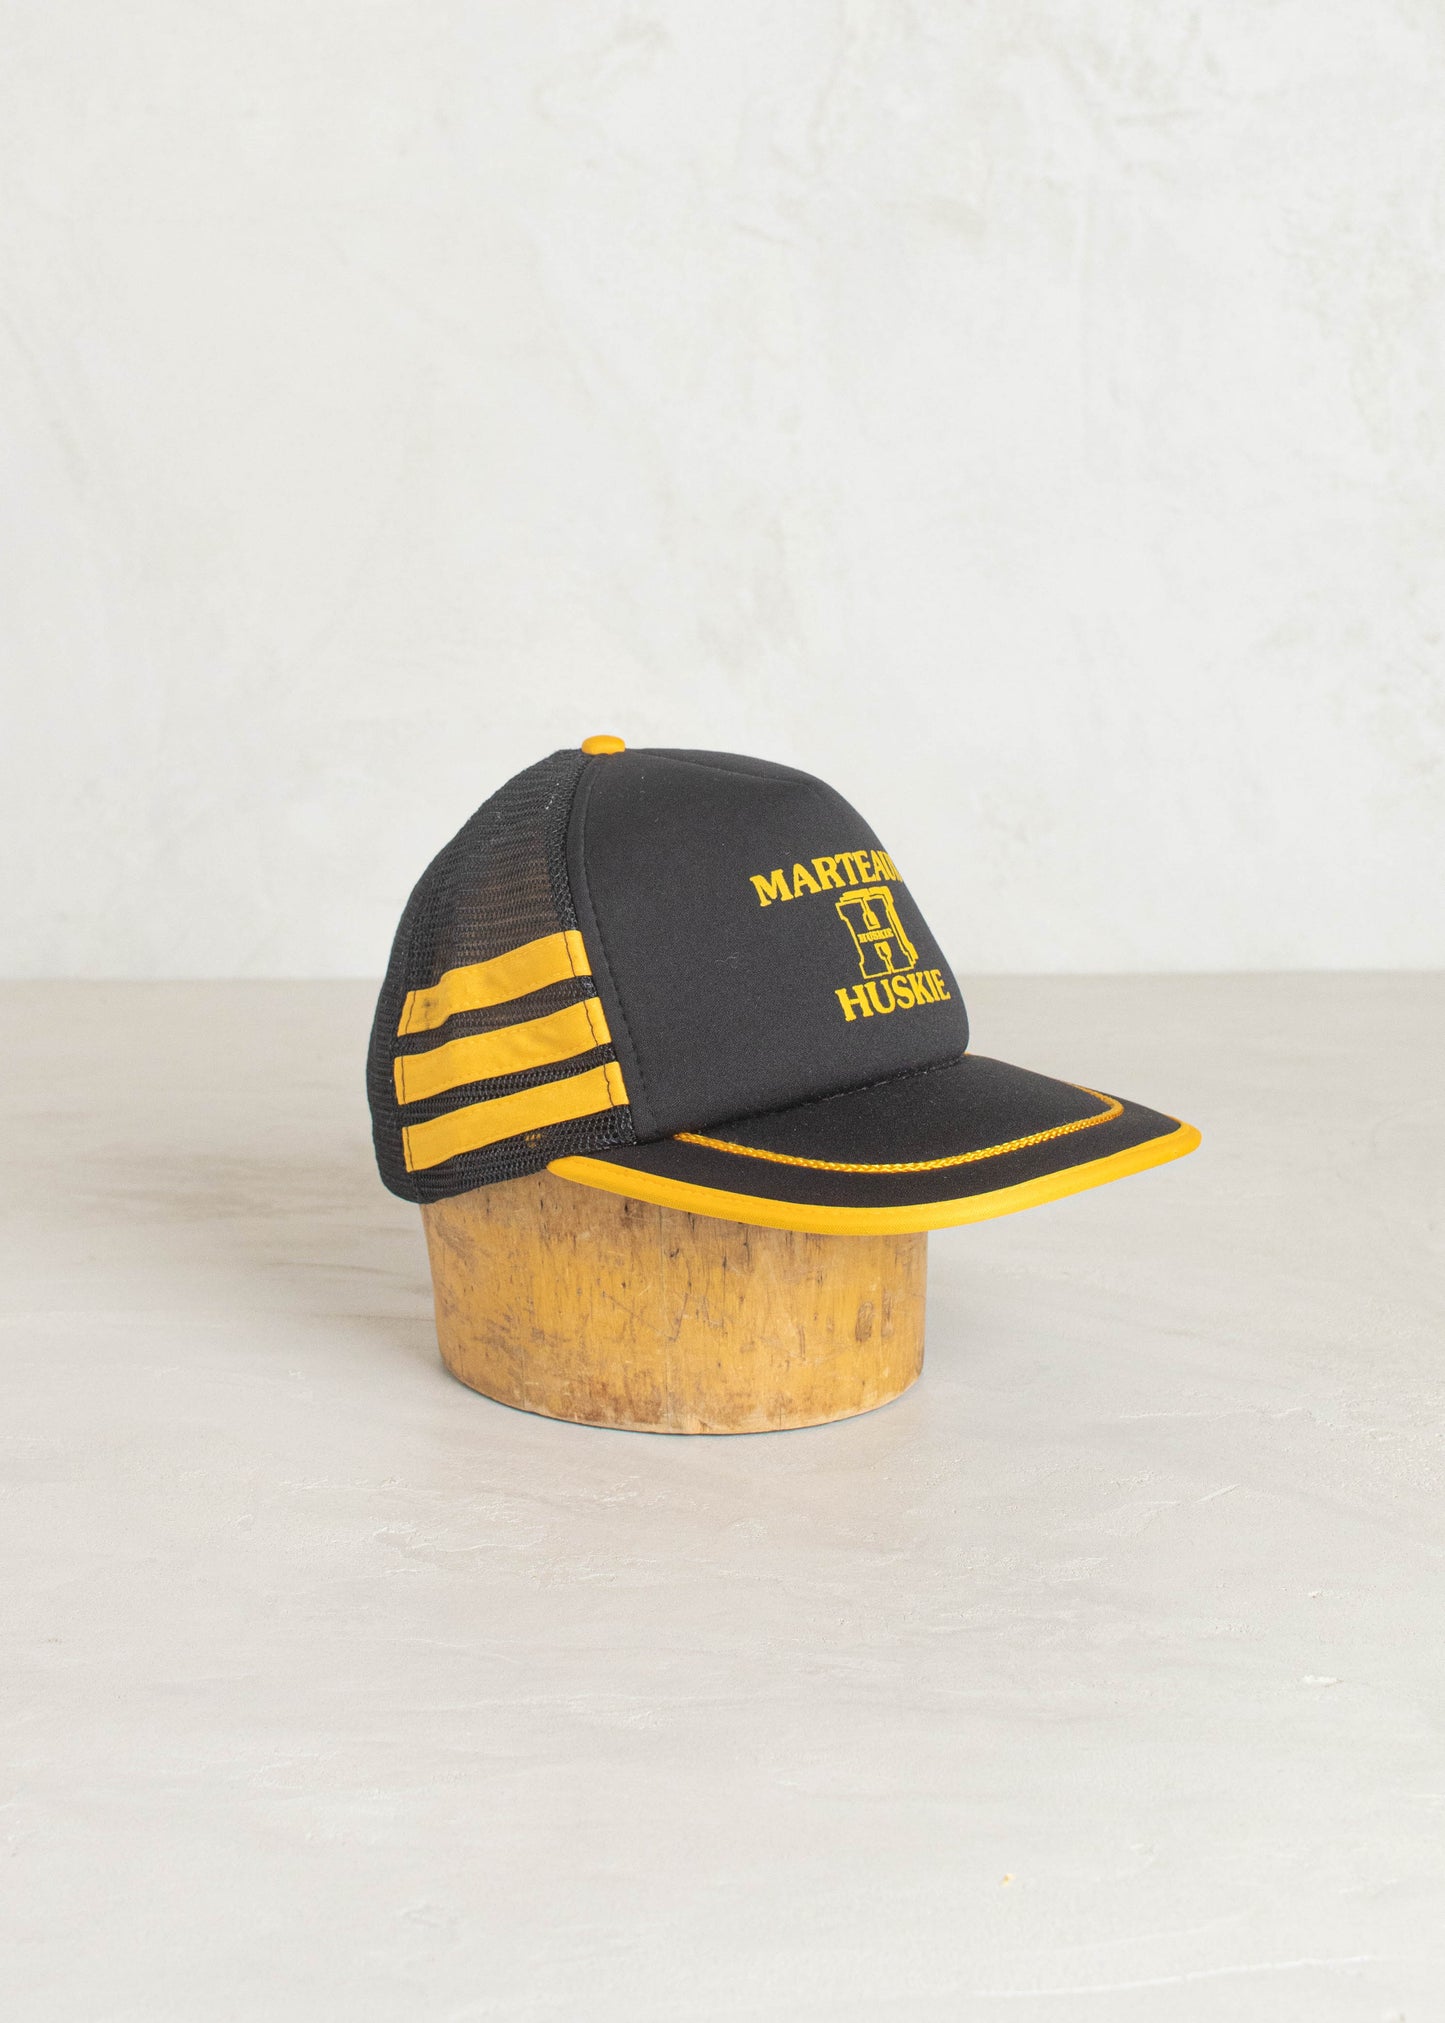 1980s AJM Marteaux Huskie Trucker Hat